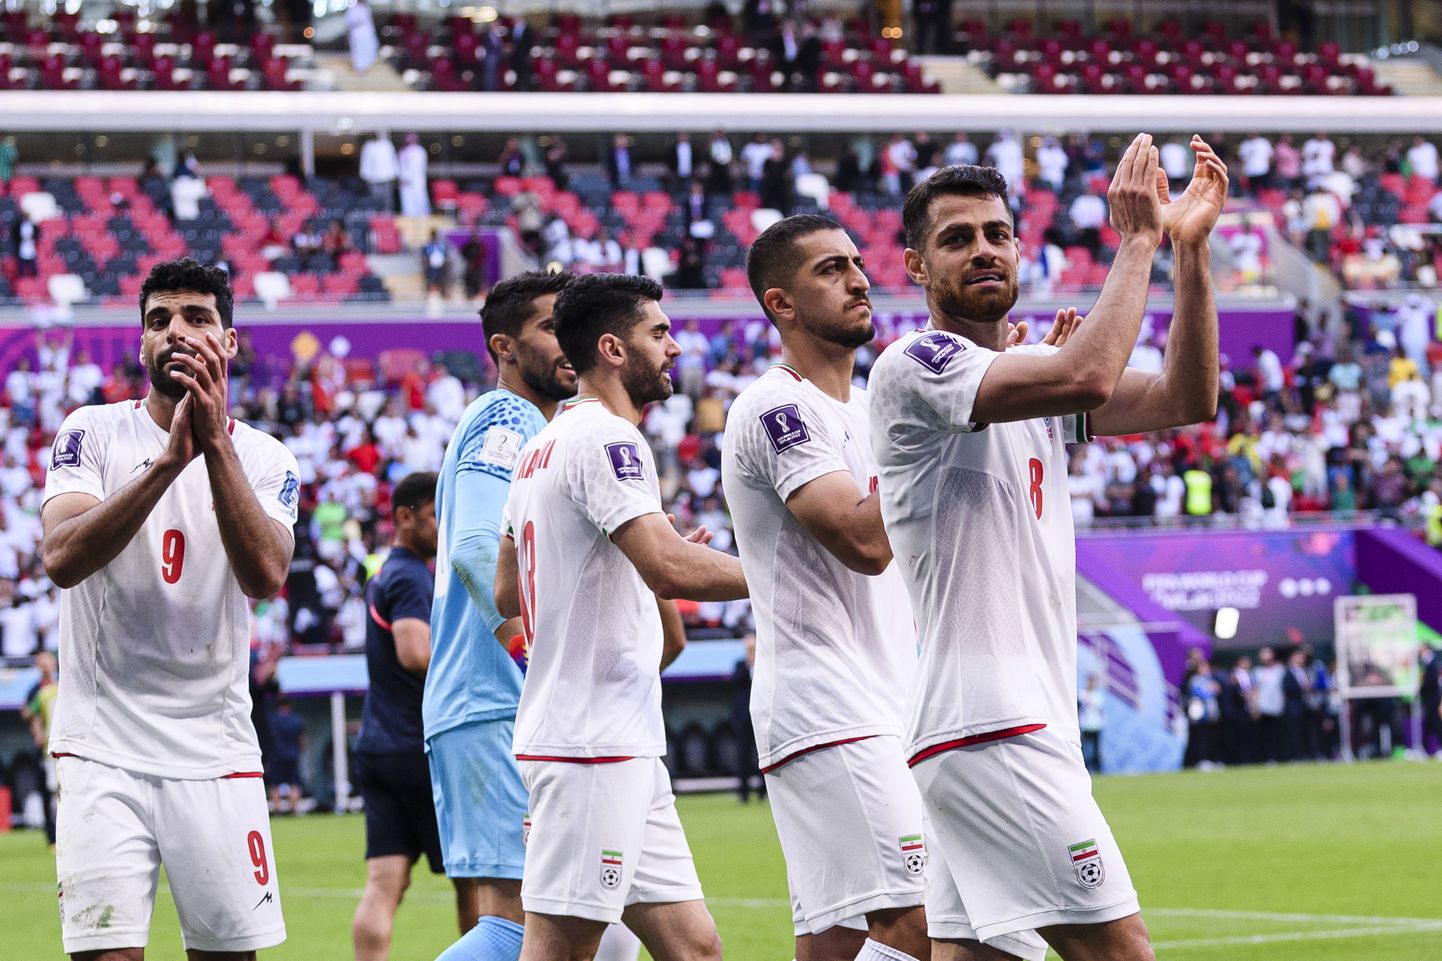 Iraani jalgpallurid rõõmustavad pärast 2:0 võitu Walesi üle.